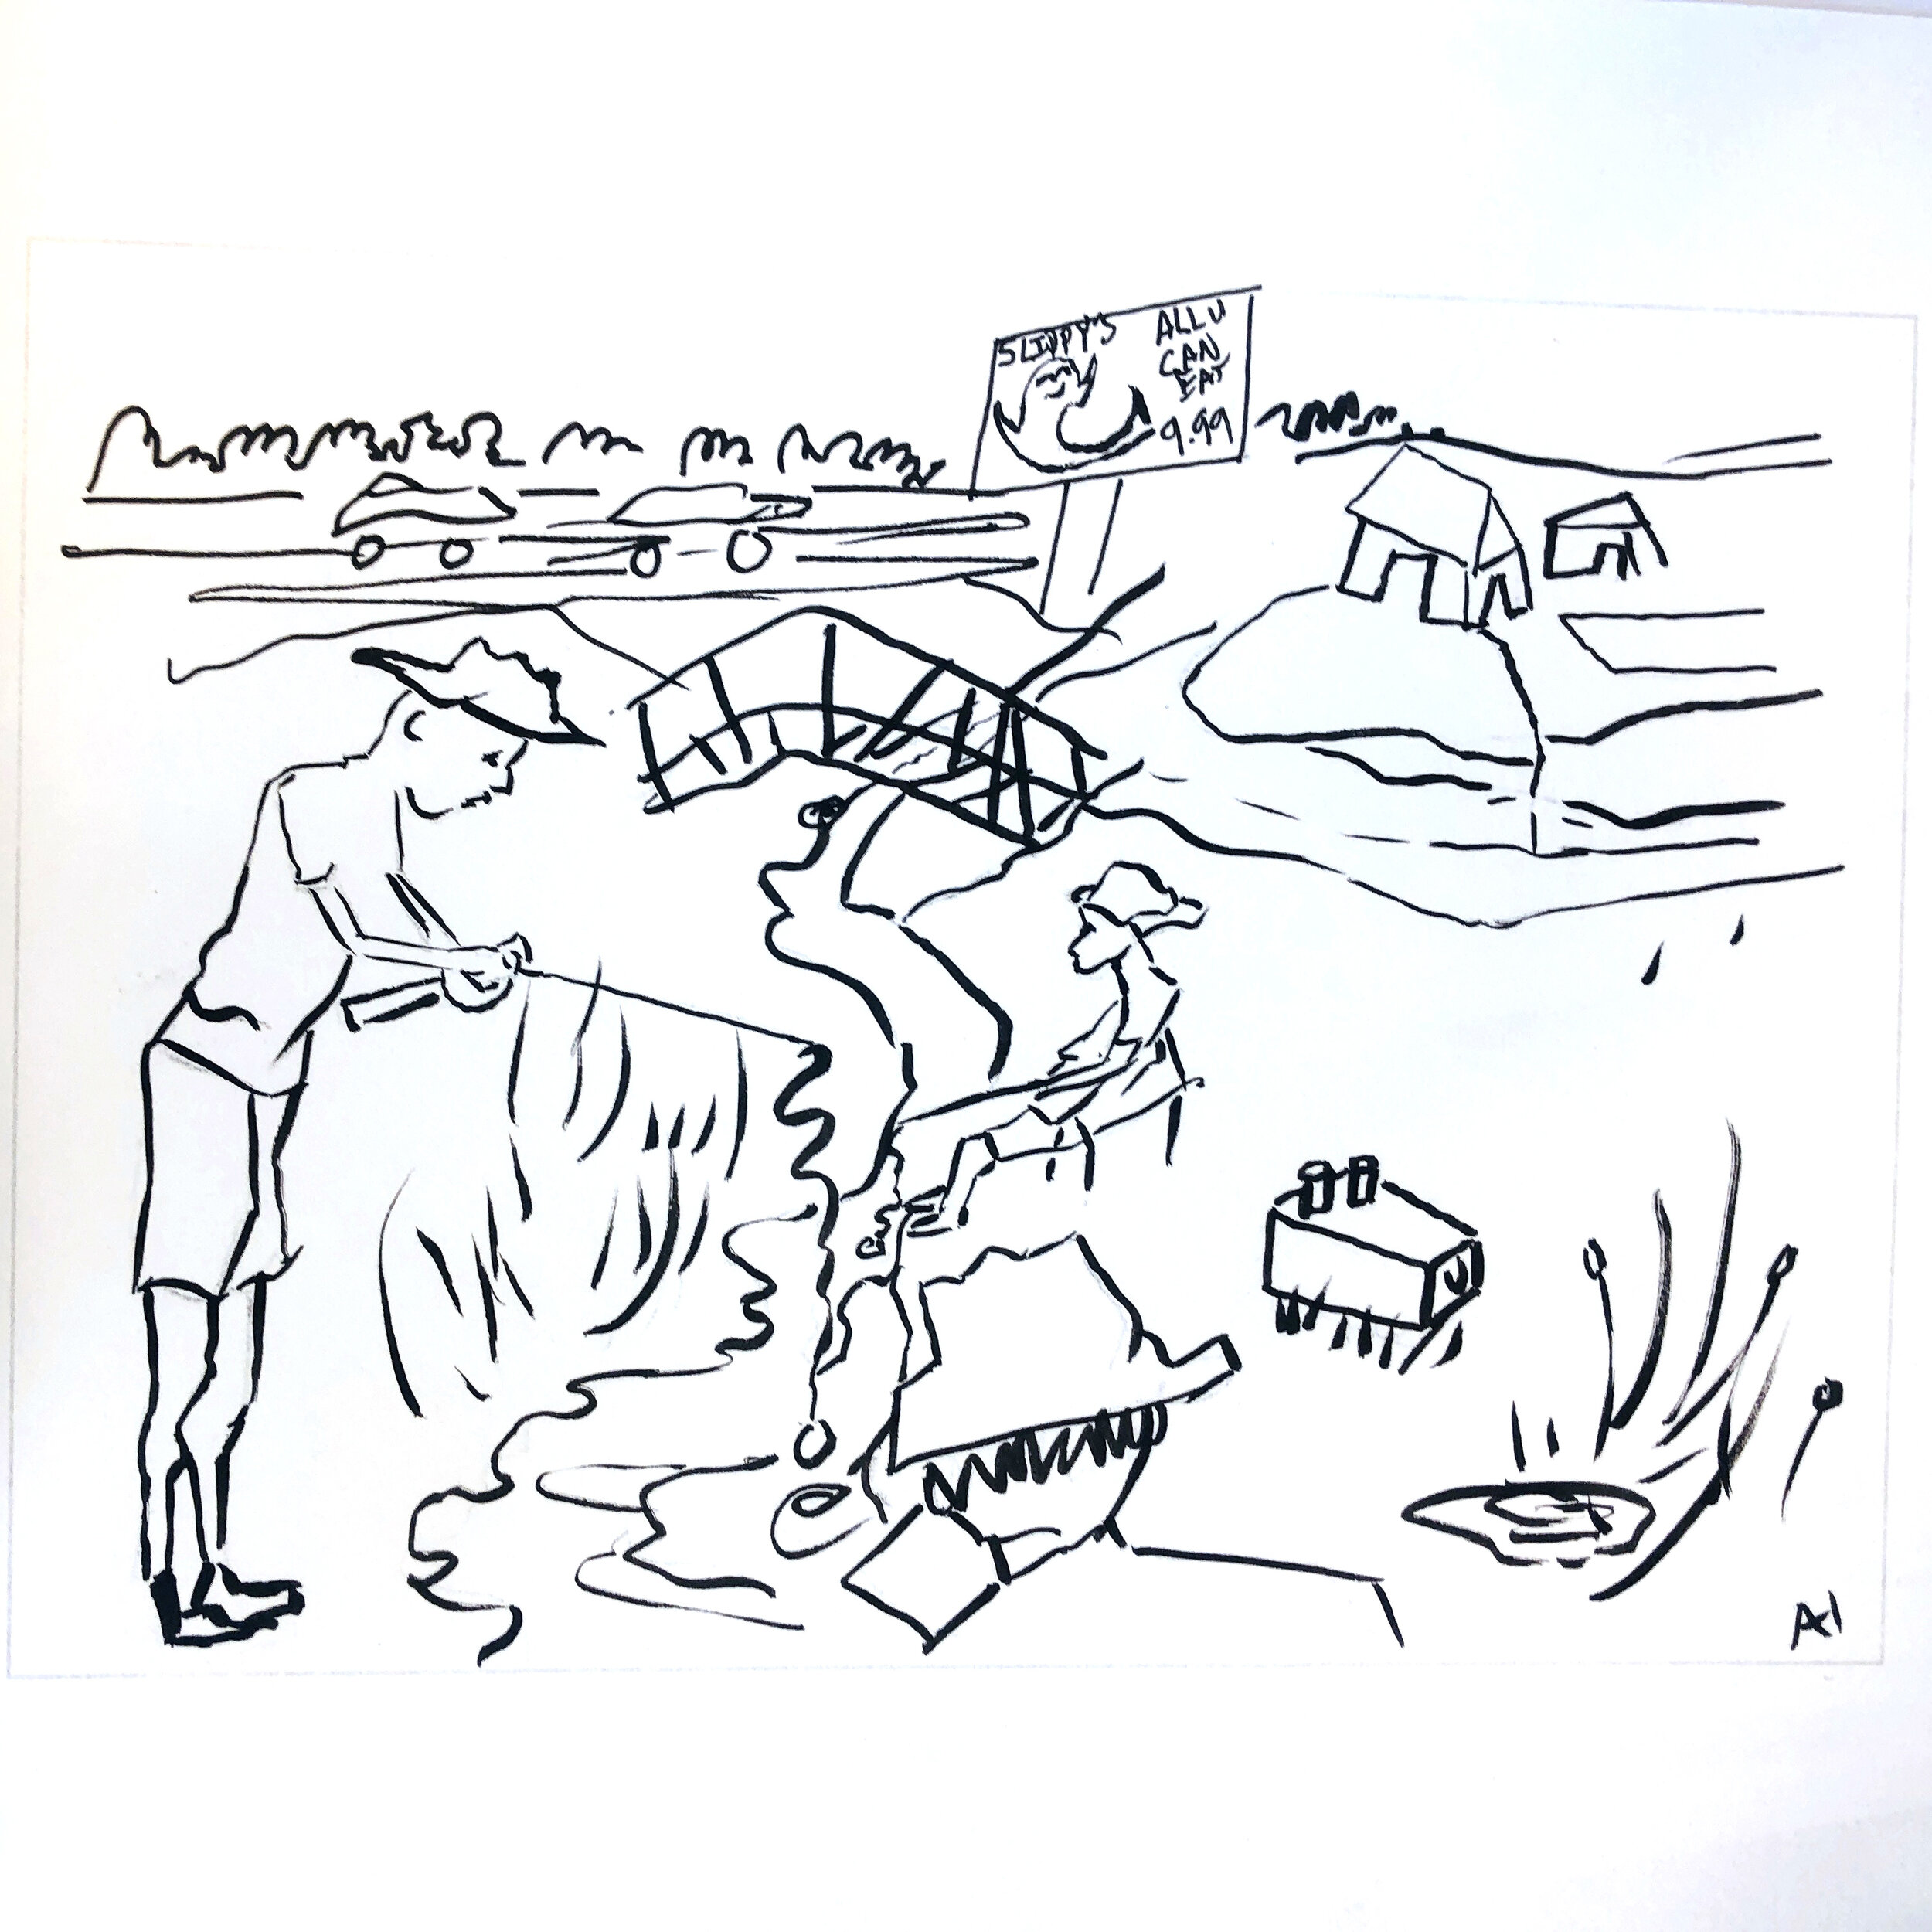 April Hammock, "Ditch Fishin’", 2020, ink on paper